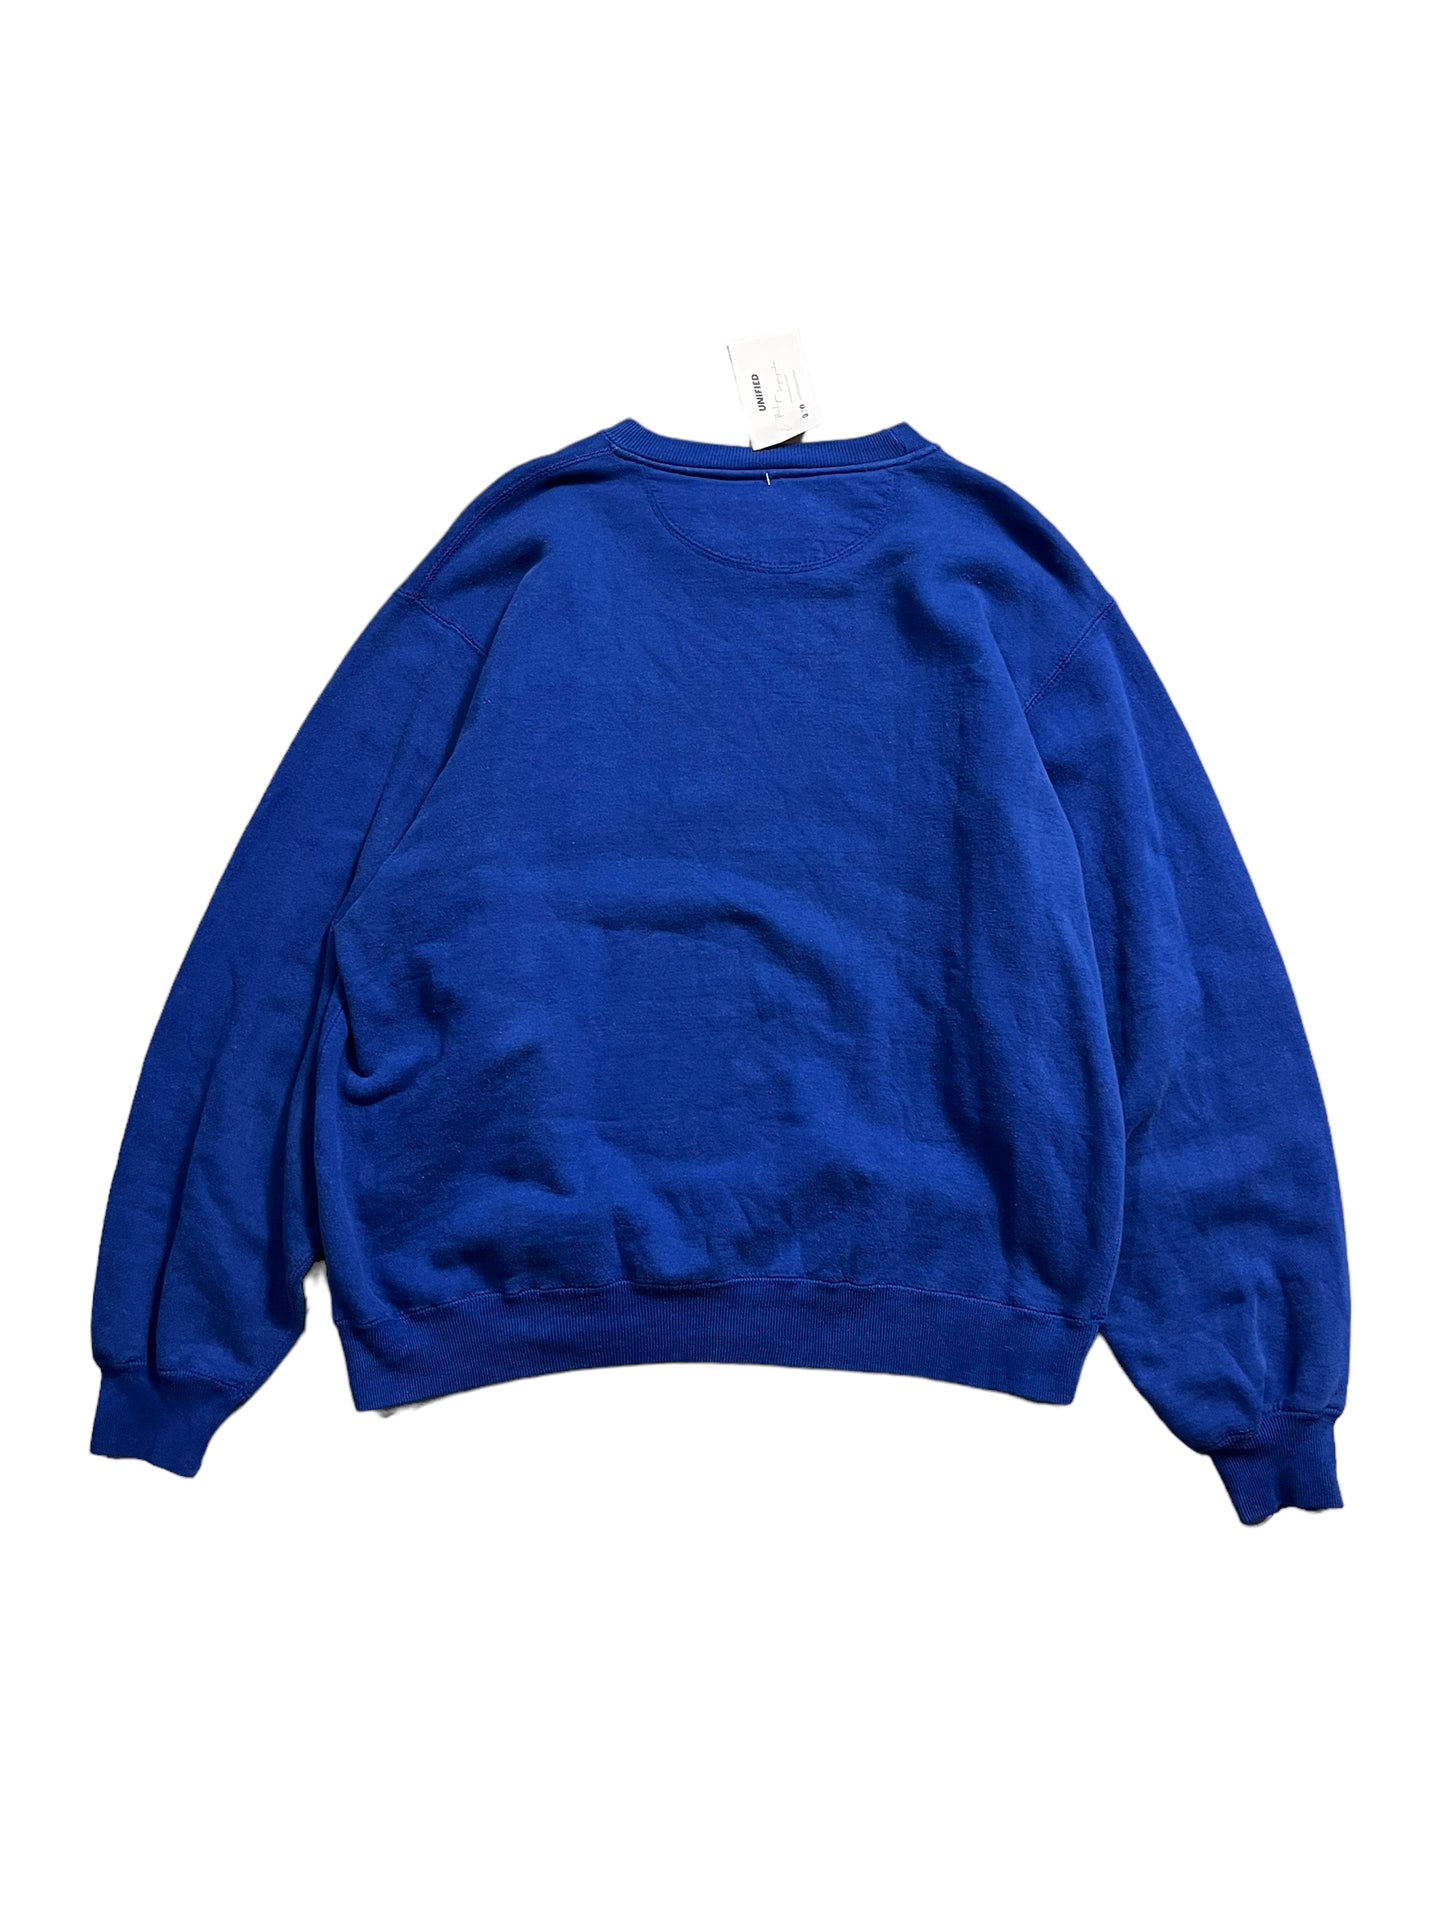 Rare Vintage Republique France Sweater